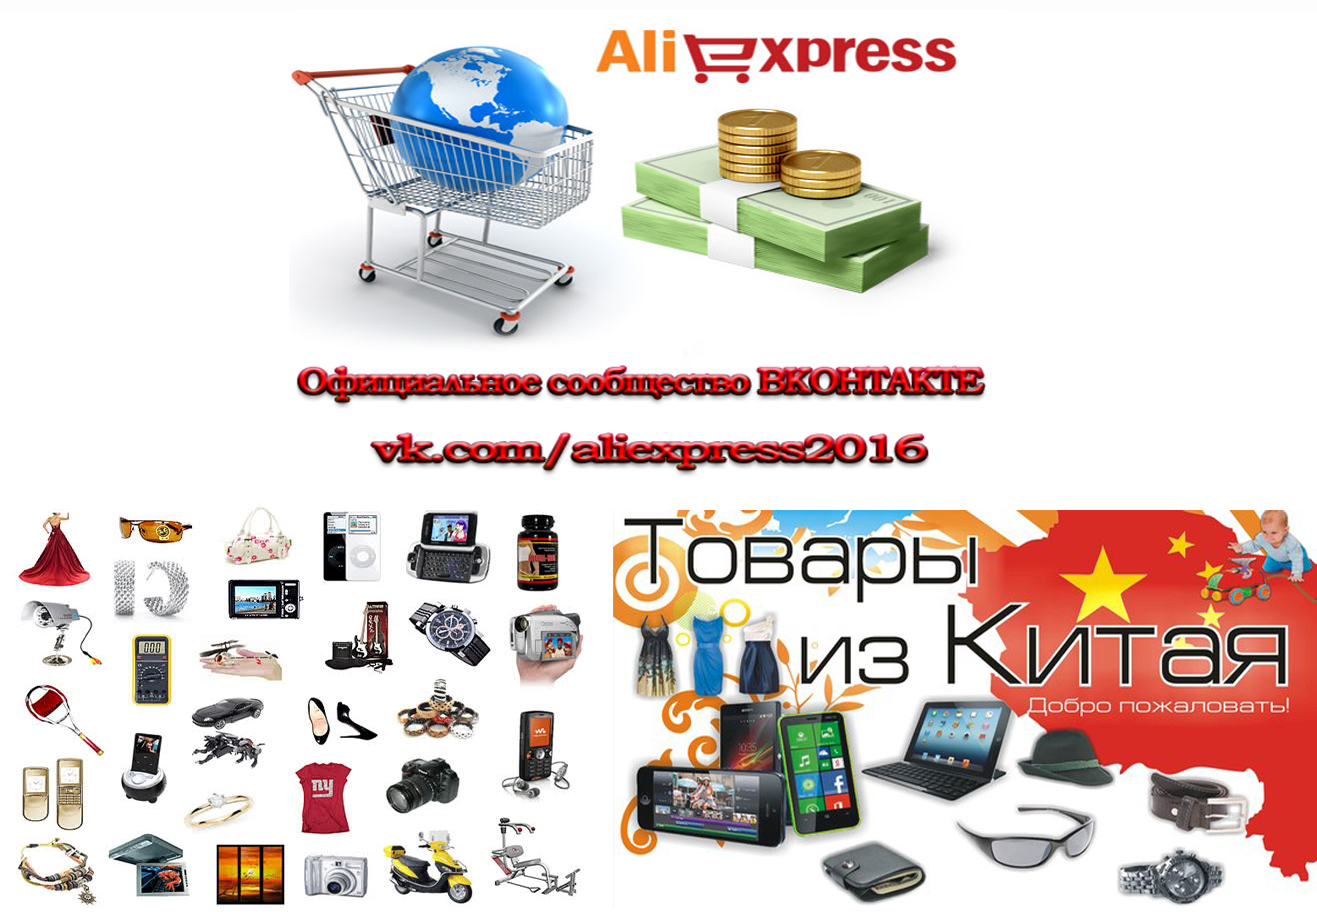 Официальное сообщество aliexpress вконтакте vk.com/aliexpress2016